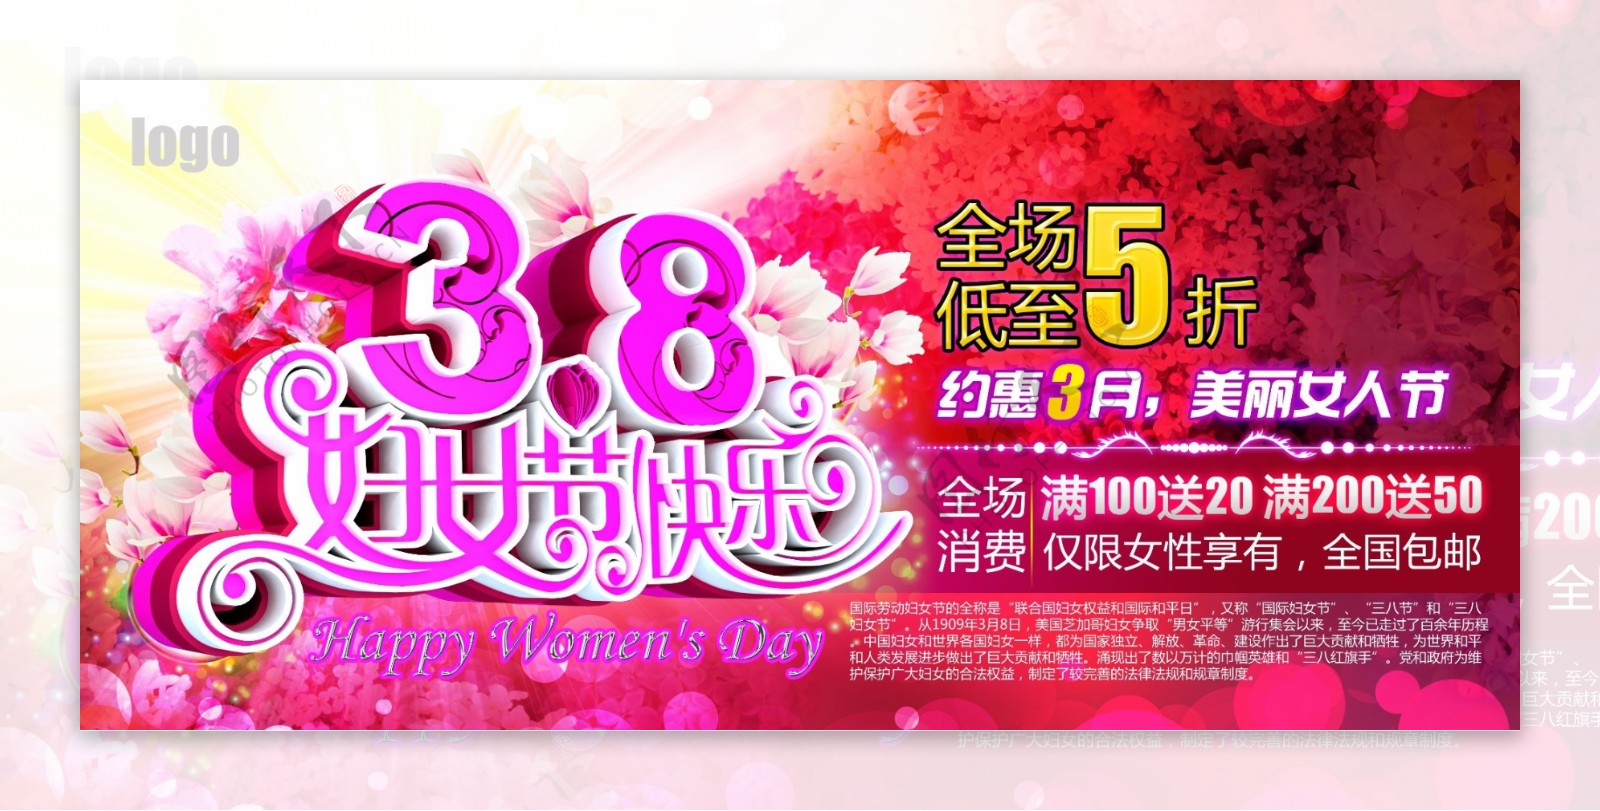 38妇女节快乐吊旗海报设计PSD素材